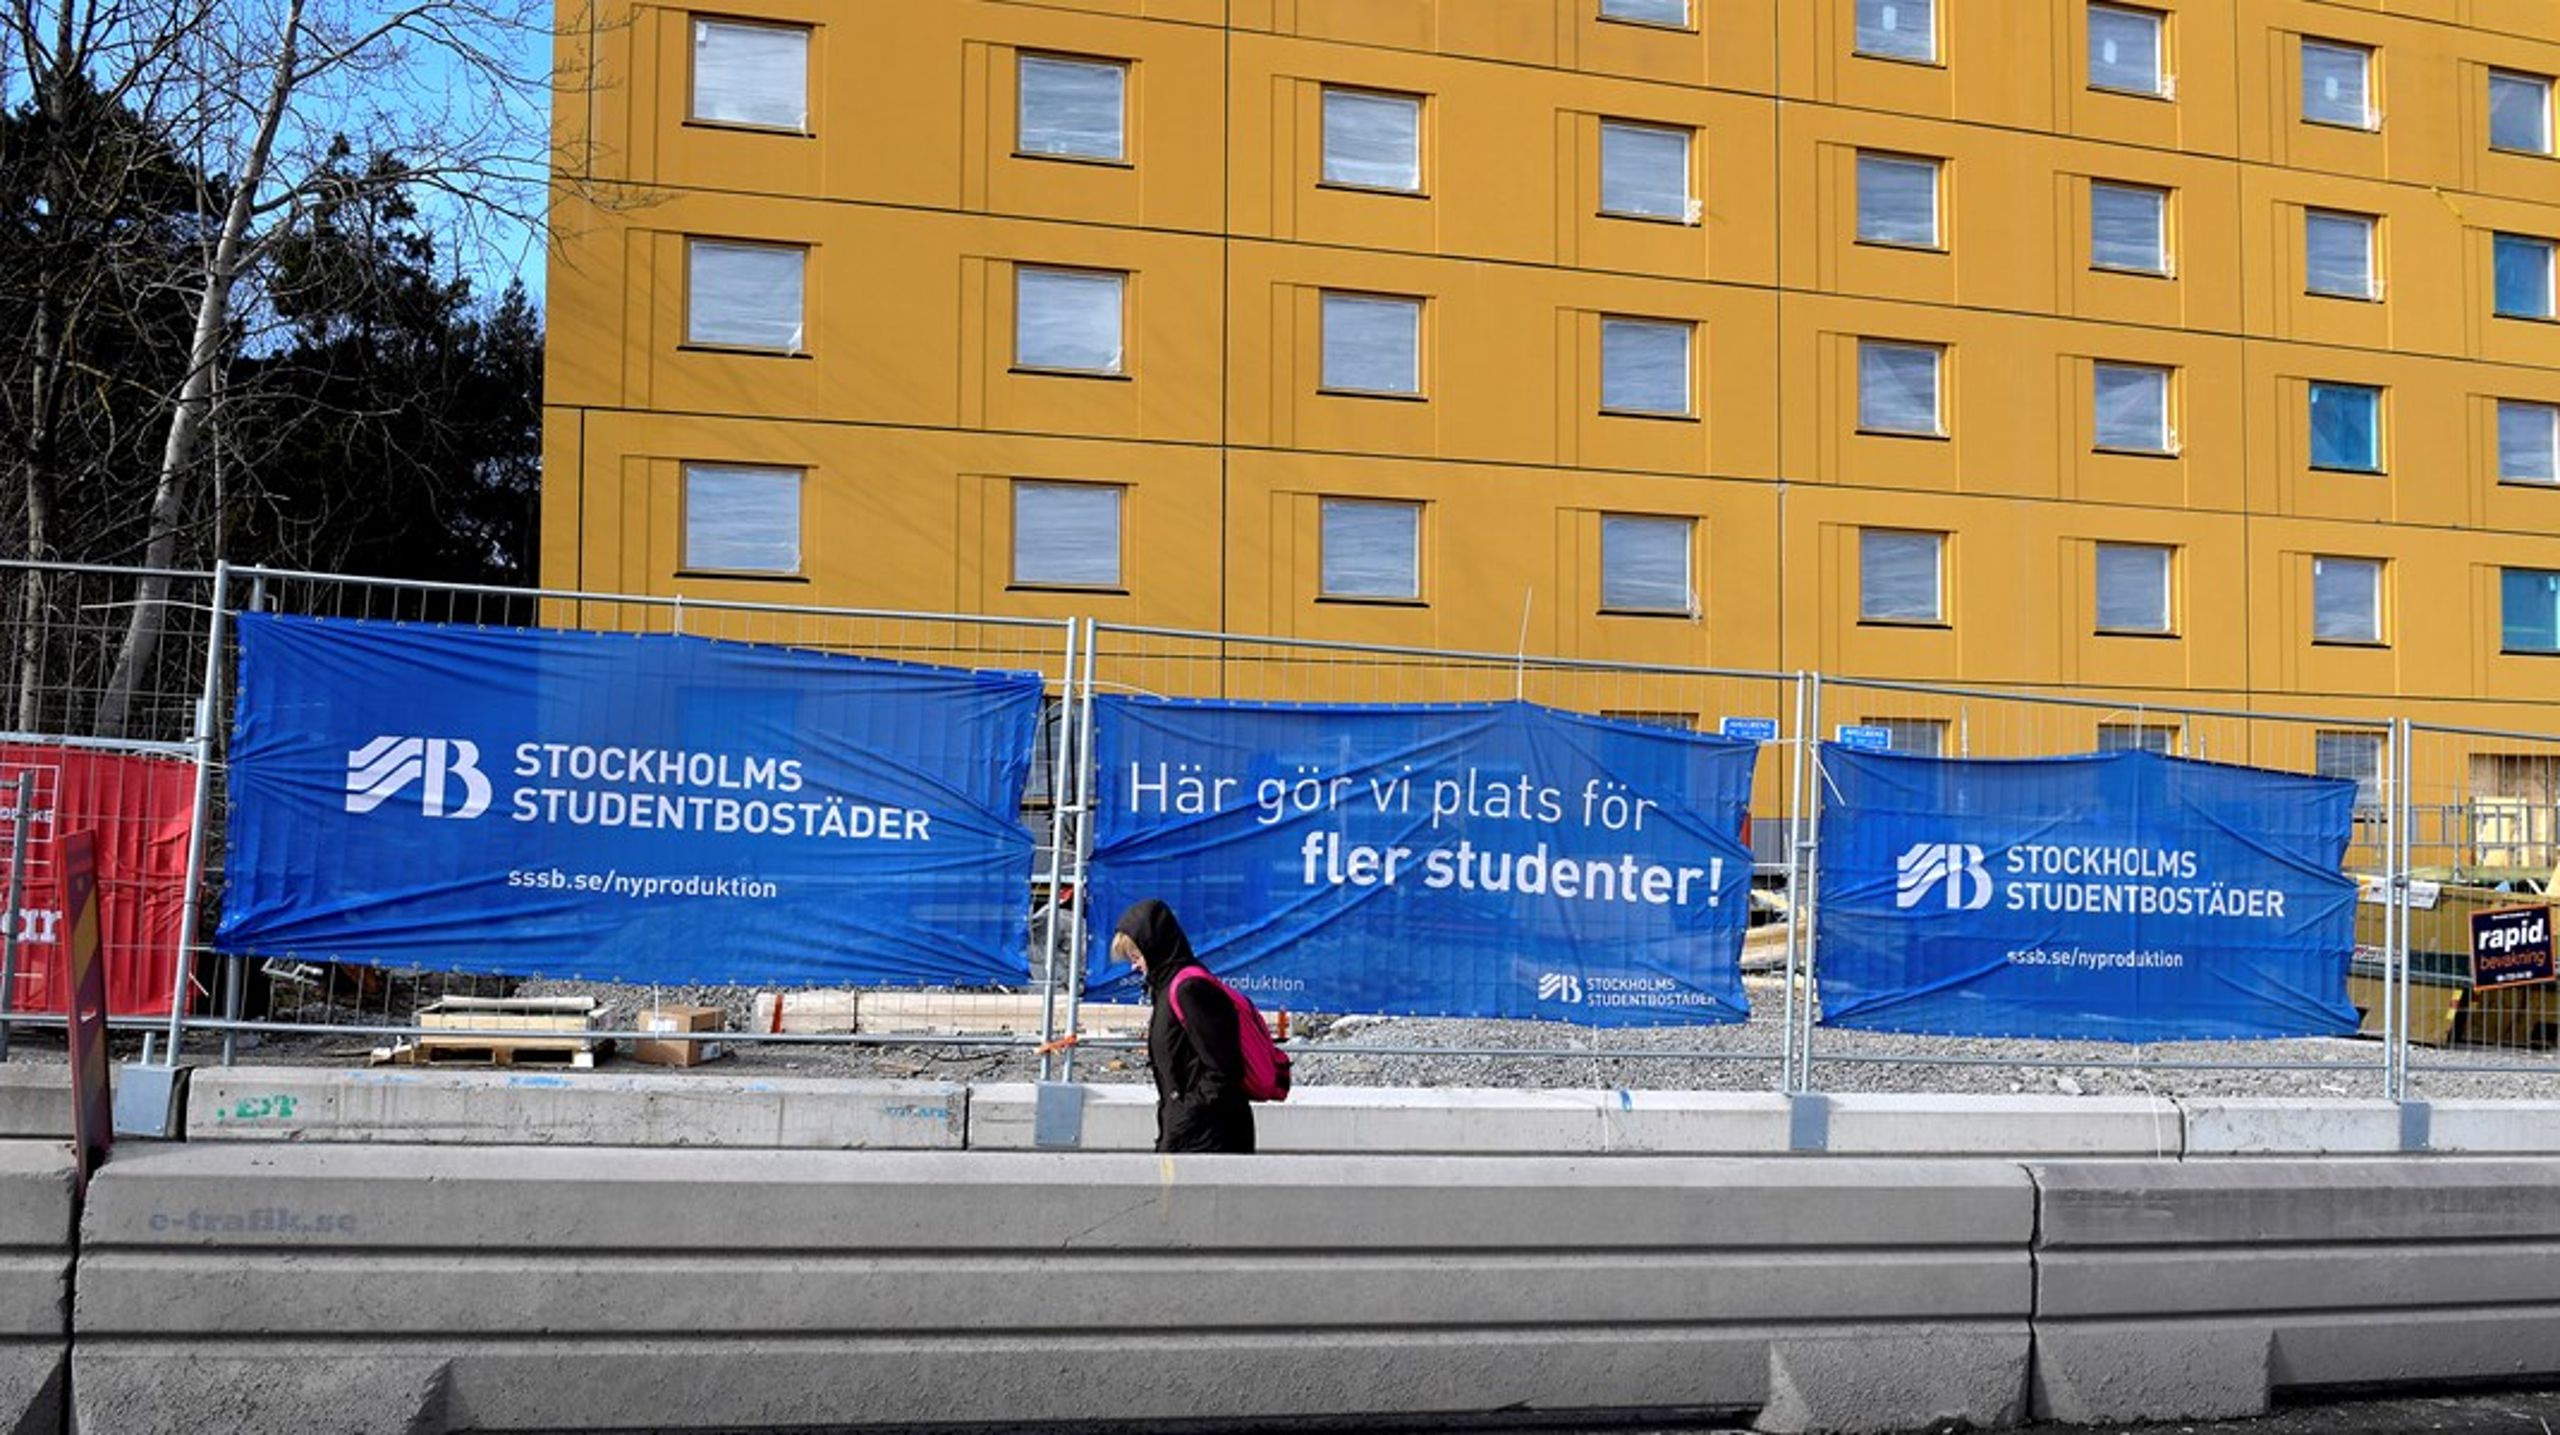 Sex av tio studenter bor i en stad med allvarlig bostadsbrist, enligt Sveriges förenade studentkårers bostadsrapport 2022.